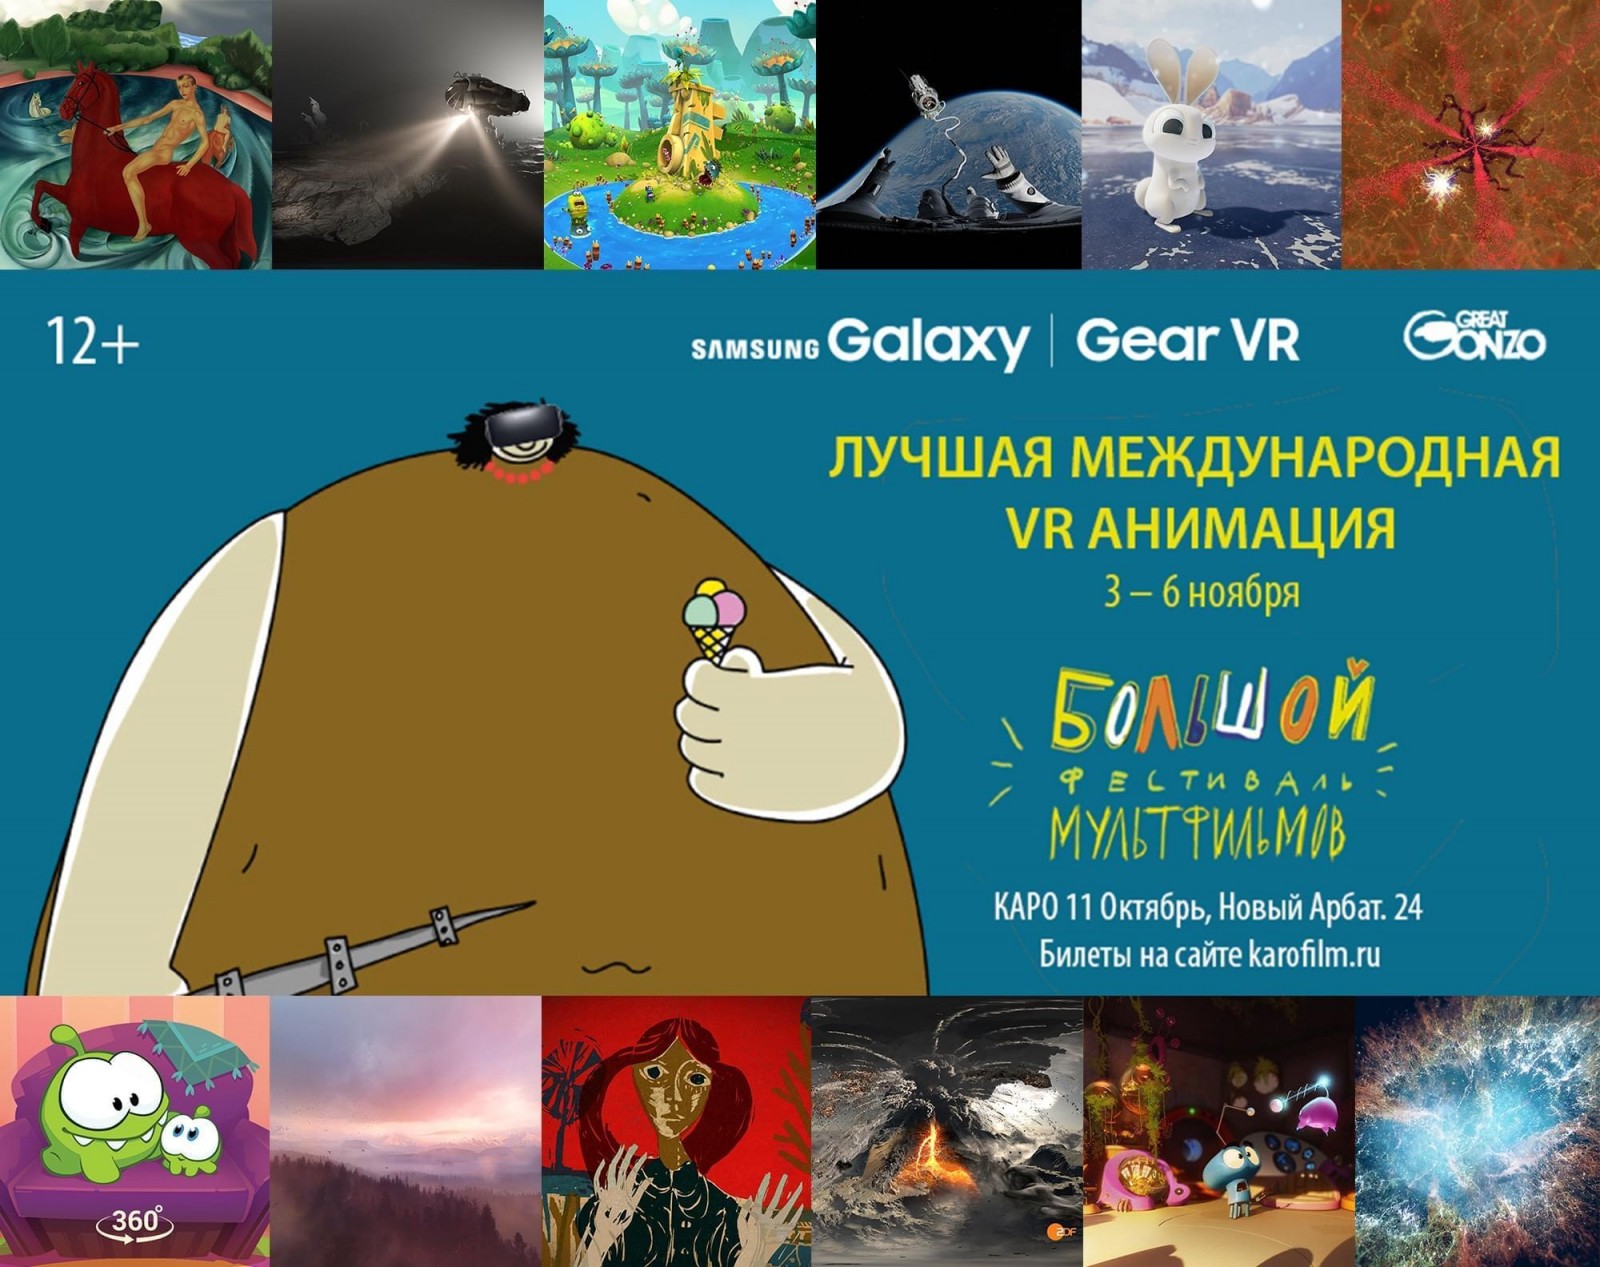 Виртуальная анимация стала специальной программой Большого фестиваля мультфильмов